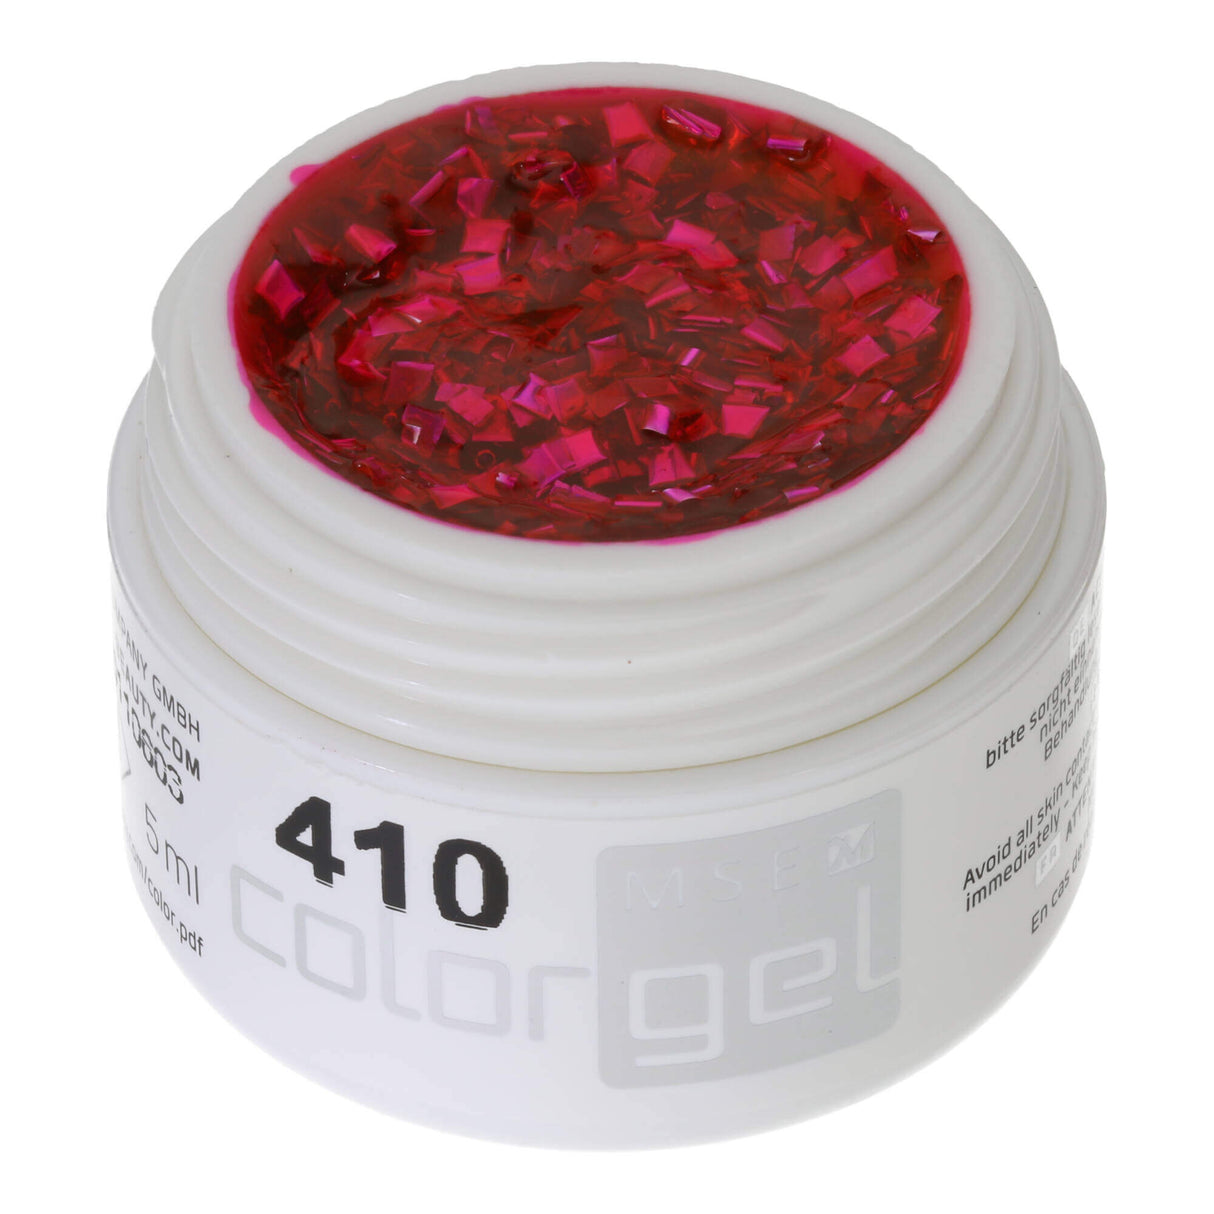 #410 Premium-EFFEKT Color Gel 5ml Durchscheinendes intensiv pinkfarbebenes Gel mit Regenbogeneffekt